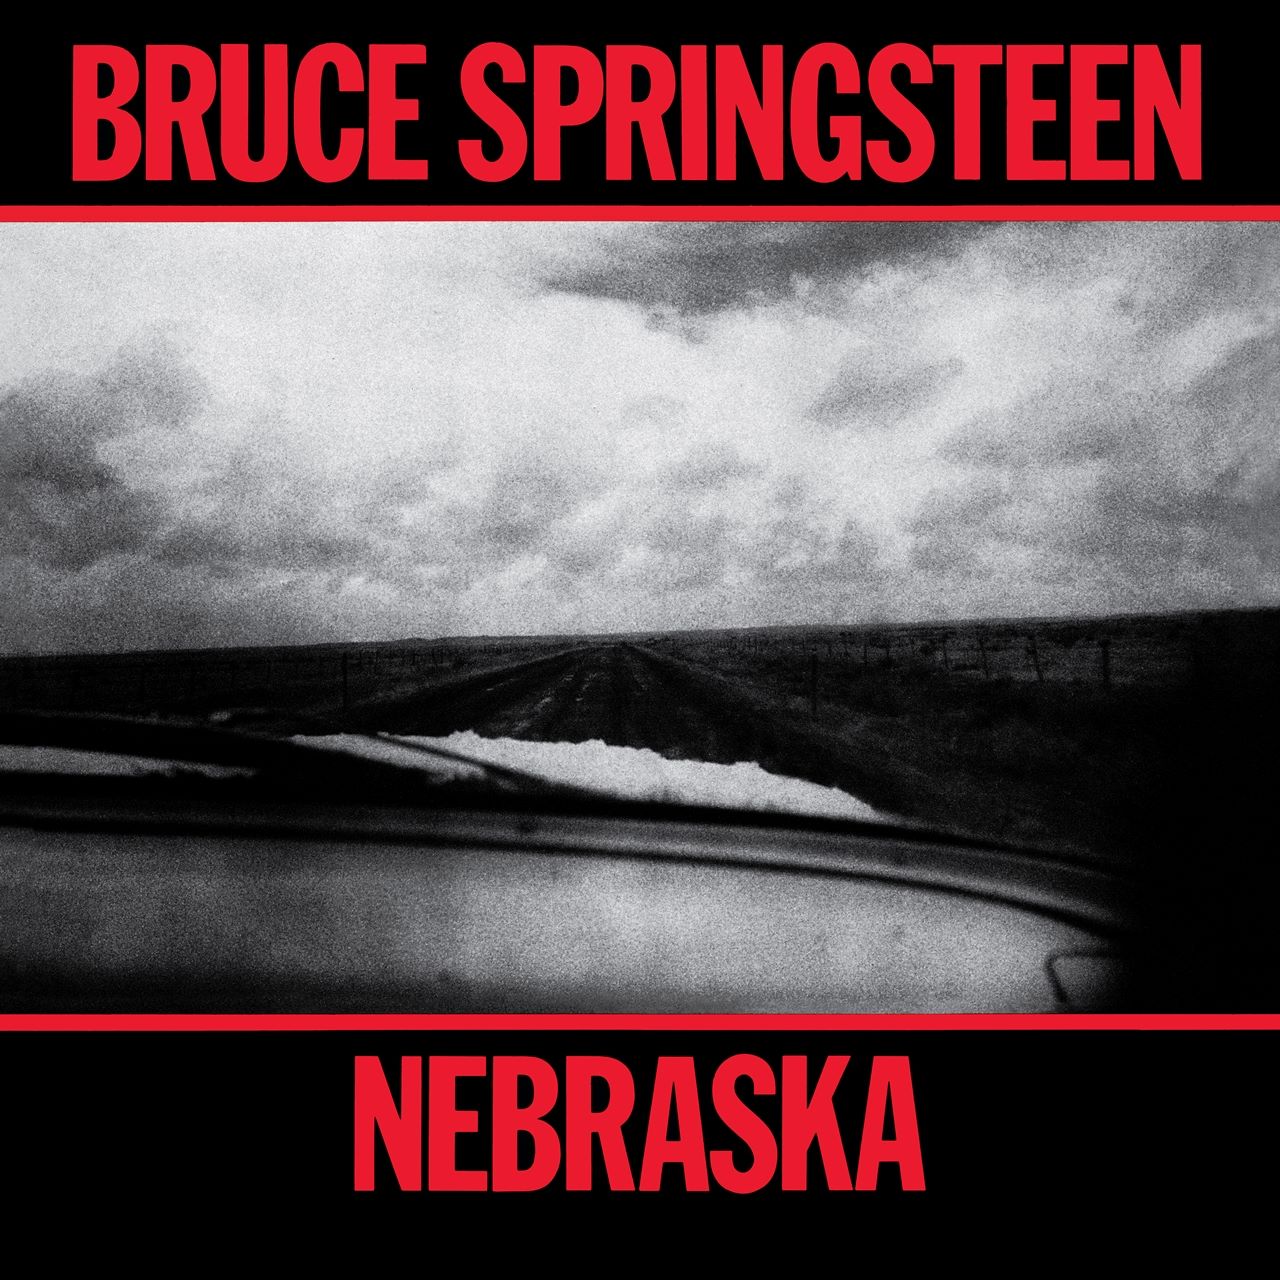 Bruce Springsteen - Nebraska cover album